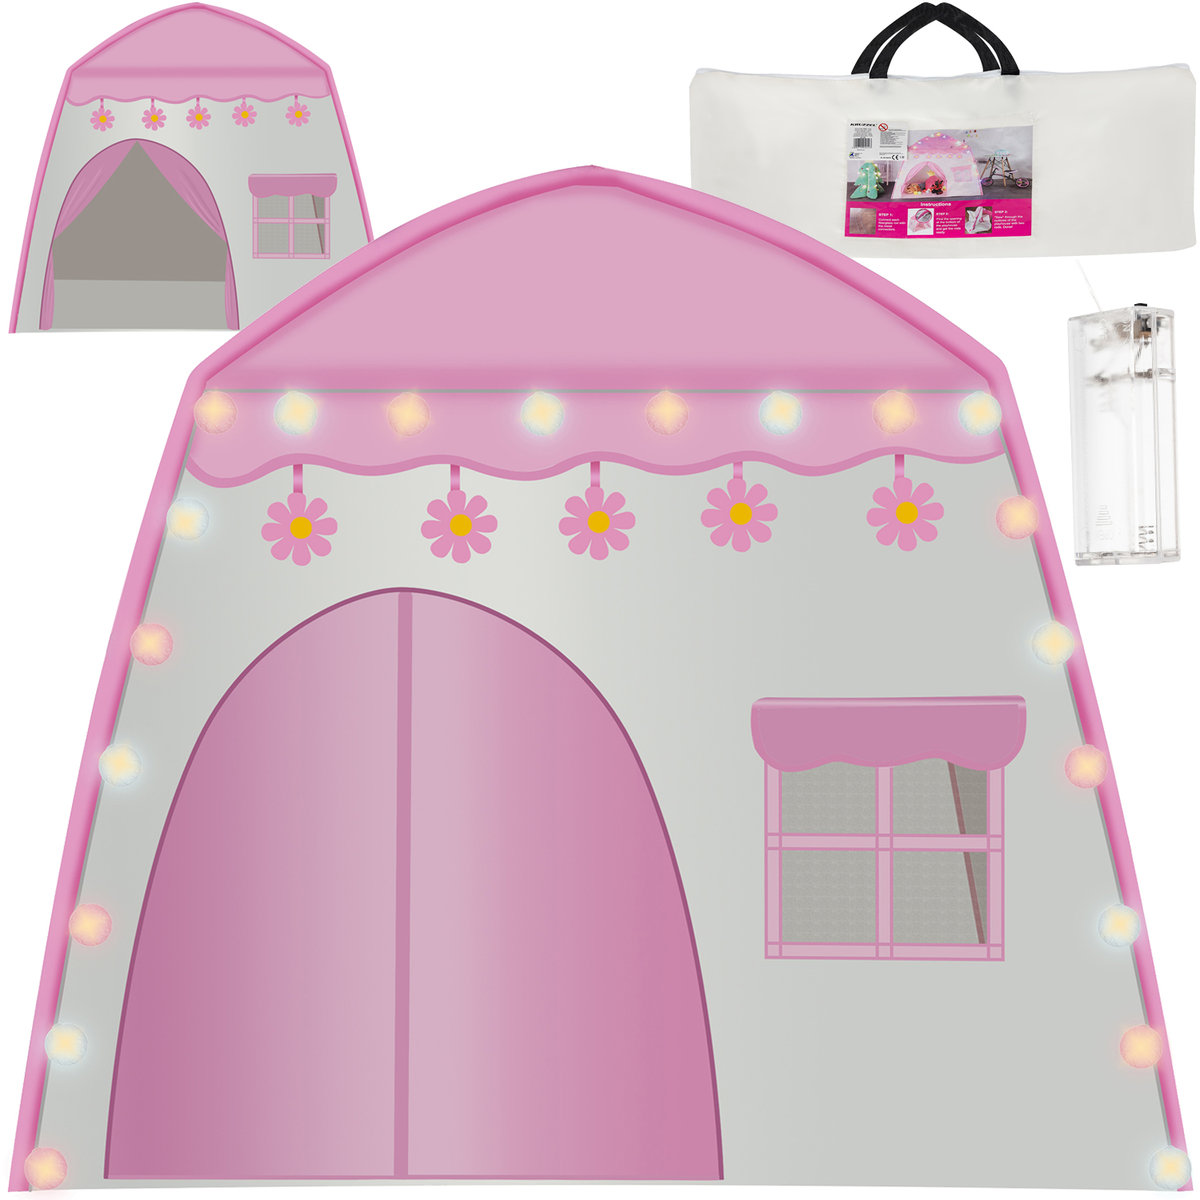 Zdjęcia - Domek Namiot  Zamek dla Dzieci Pałac z Lampkami LED KRUZZEL